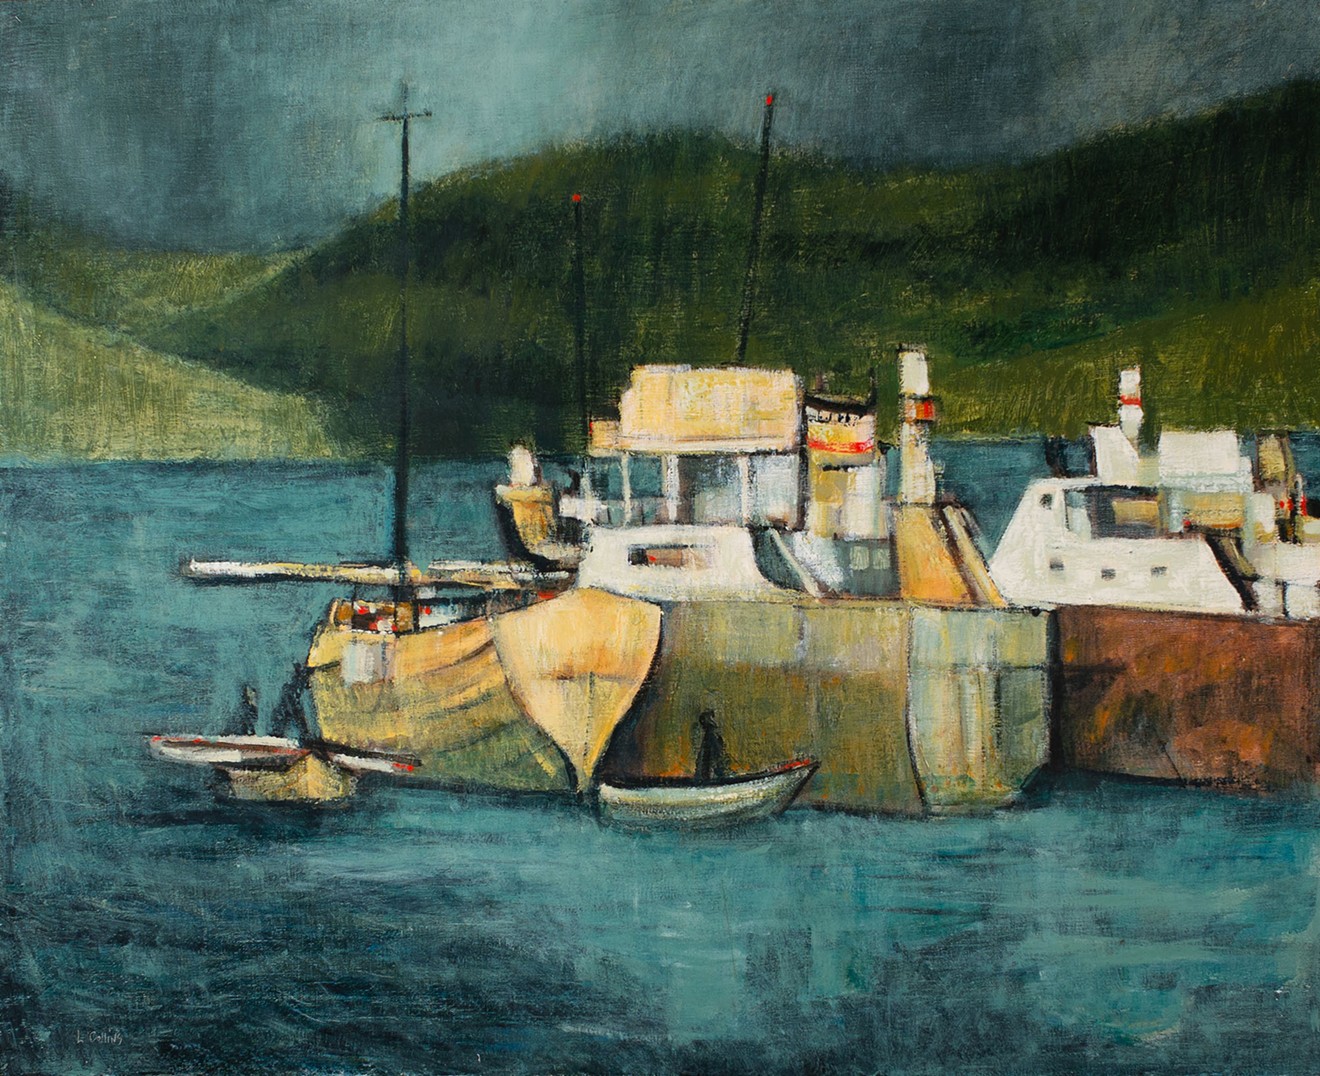 "Harbor", 1950s, oil on linen, 32" x 42"